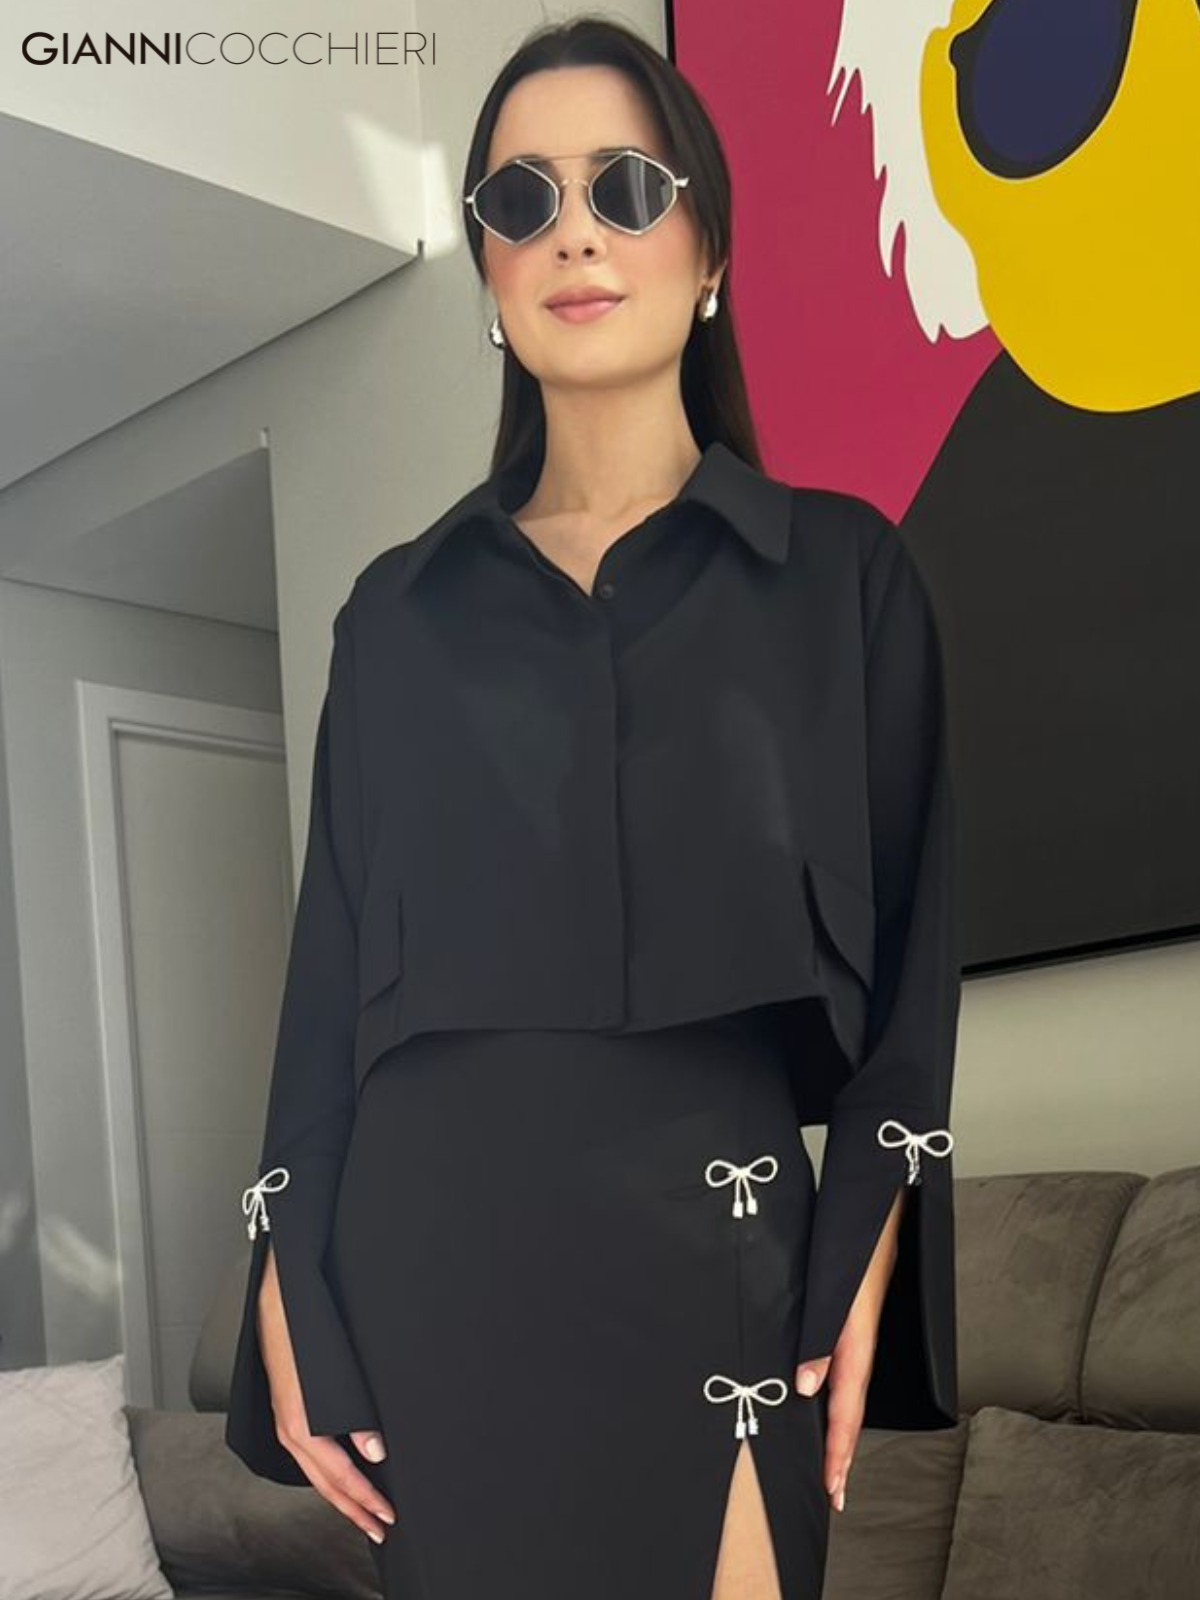 A camisa cropped preta é uma peça versátil e moderna que combina estilo e sofisticação. Os laços em strass adicionam um toque de glamour, elevando o visual.